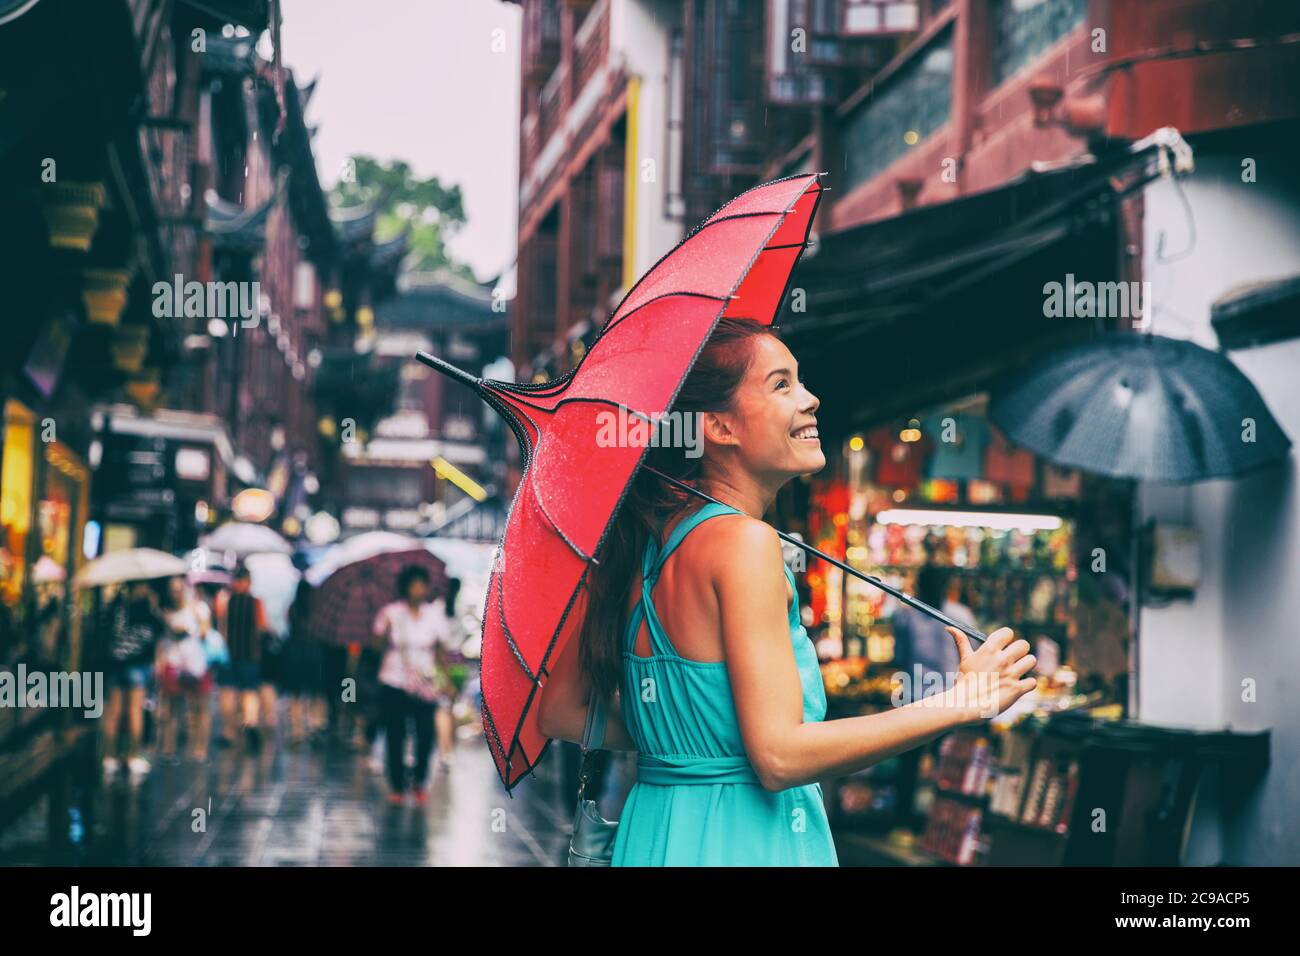 Menschen Lifestyle Regenschirm Reise asiatische Frau einkaufen in chinatown Marktstraße. Regentag Mädchen Tourist unter roten orientalischen Regenschirm in hinteren Gassen in Stockfoto